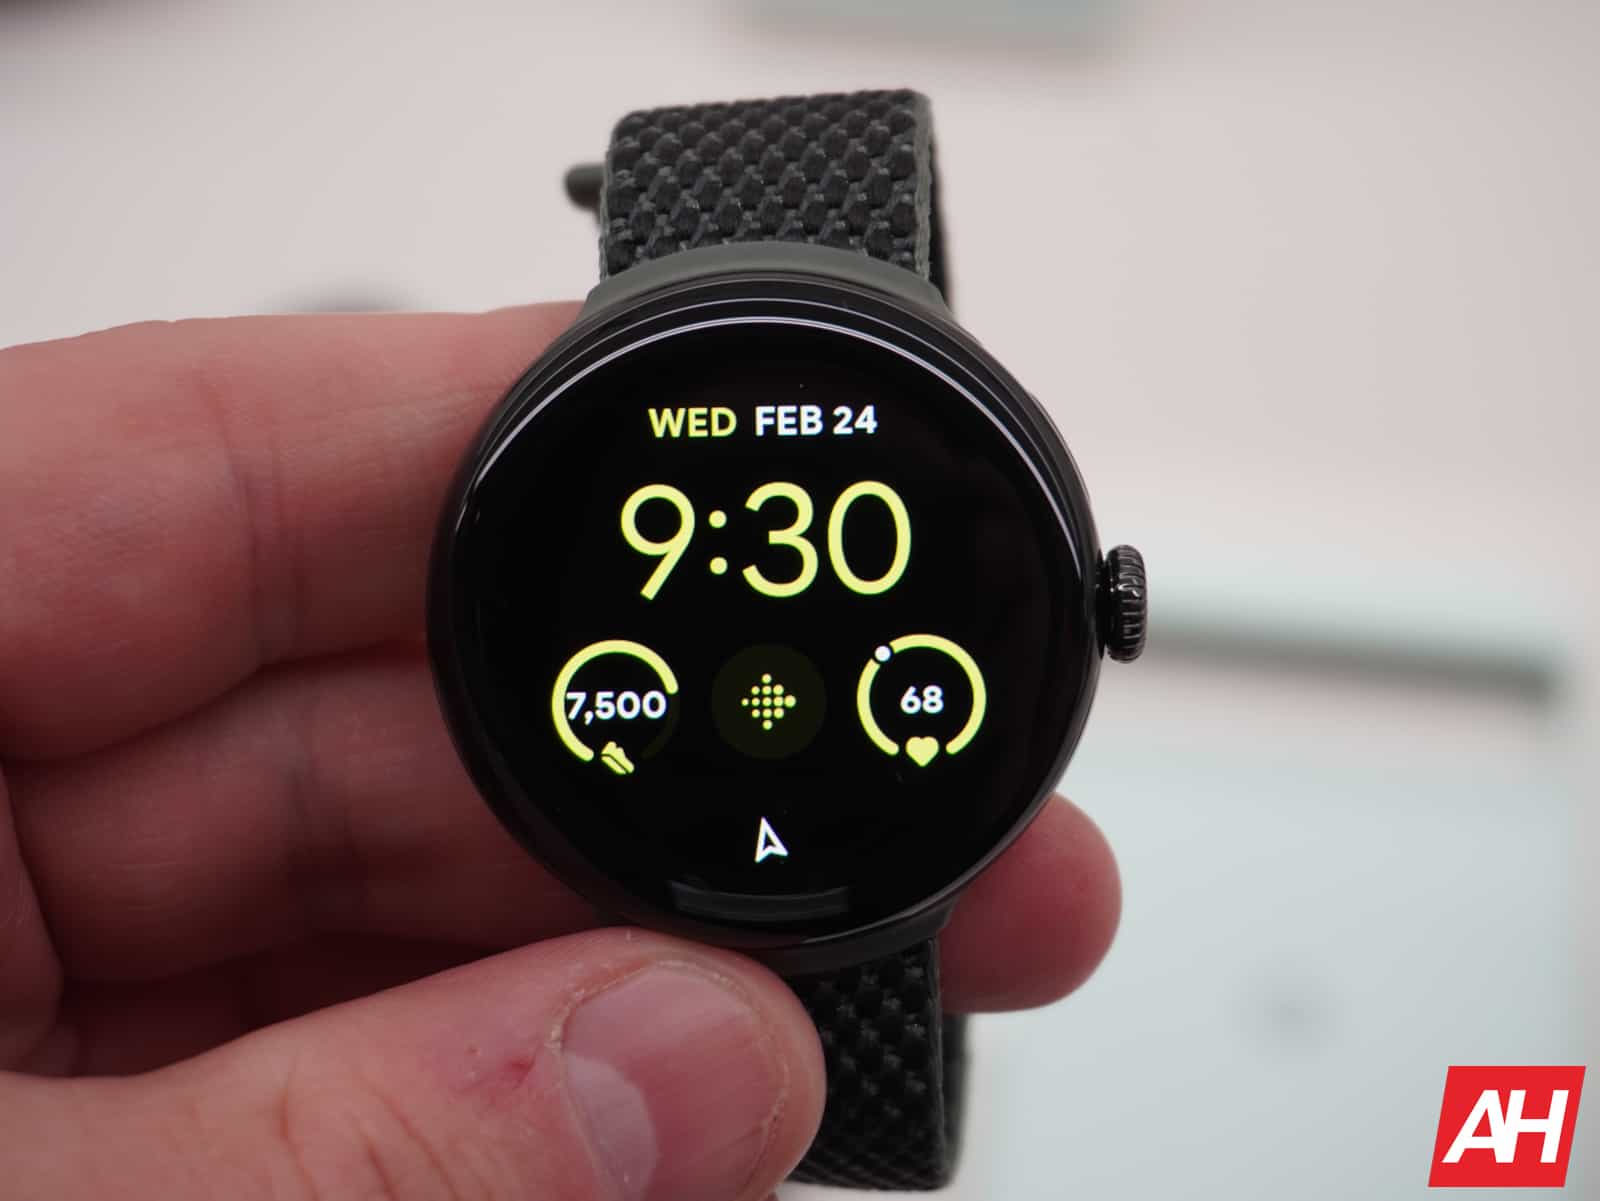 Se rumorea que Pixel Watch 3 tiene una opción de tamaño más grande de 45 mm